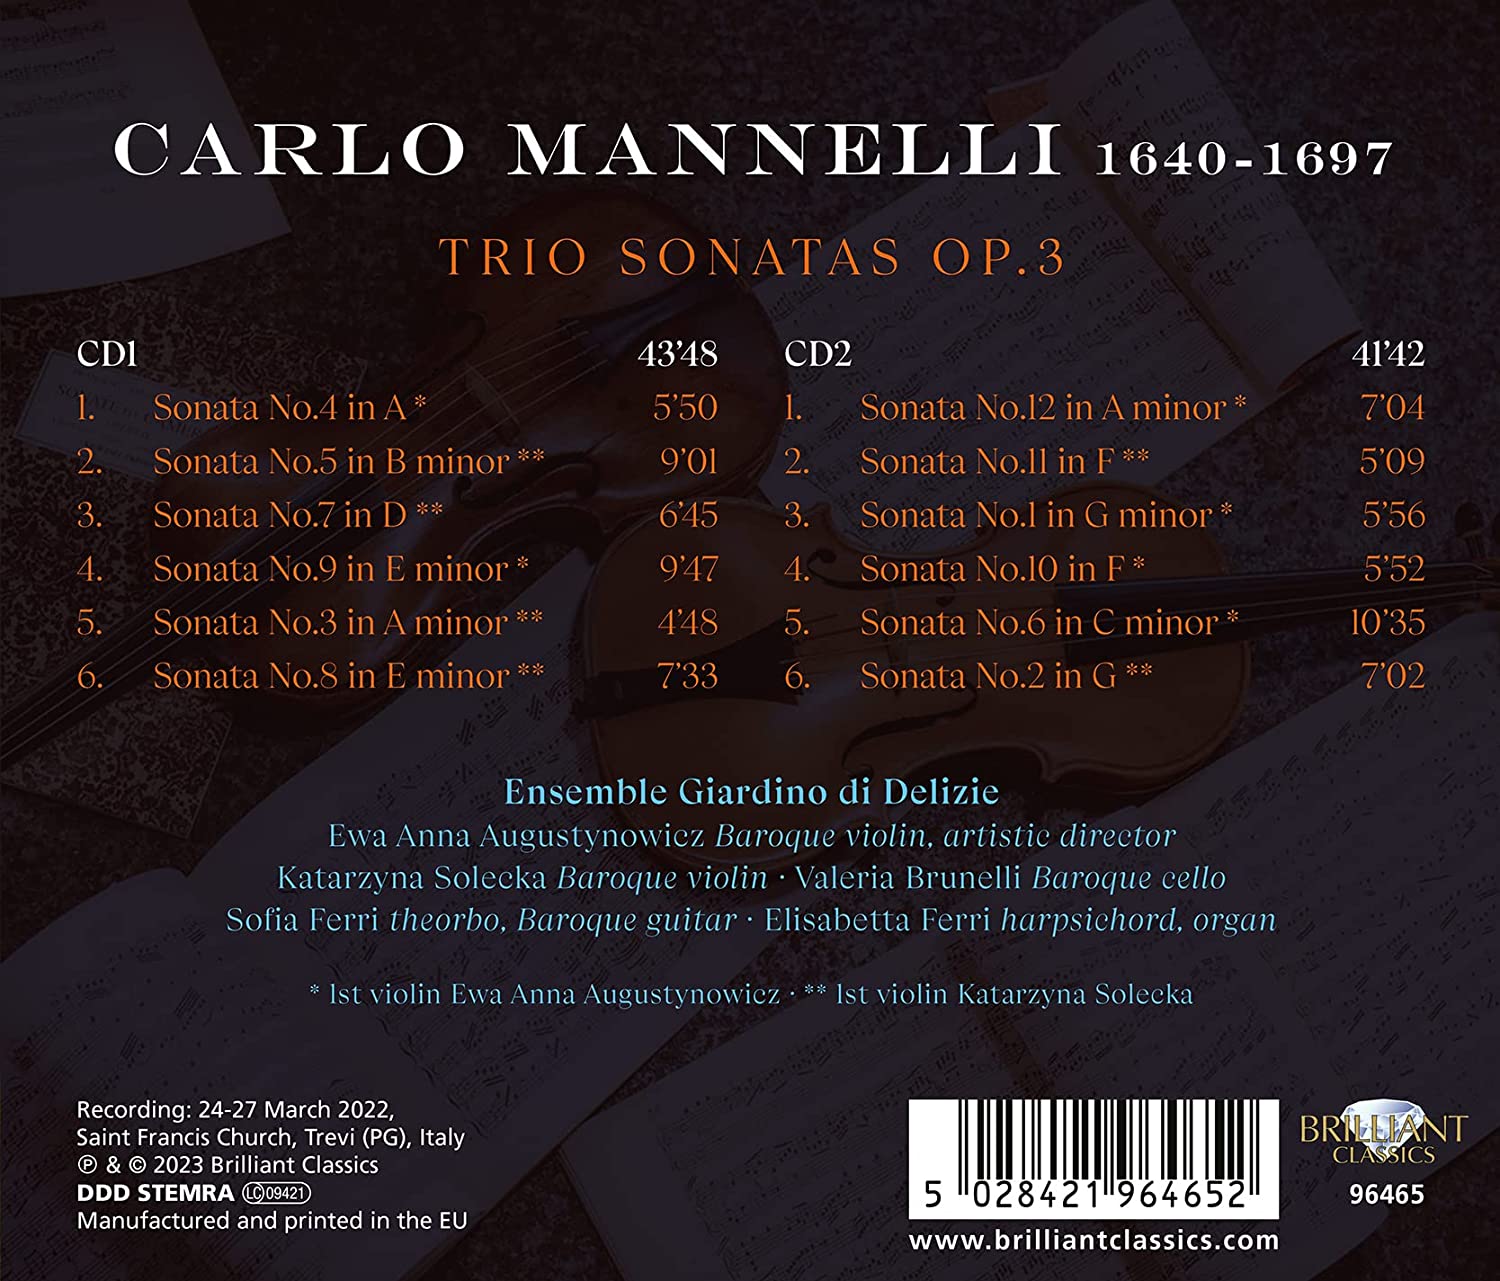 Ensemble Giardino di Delizie 마넬리: 트리오 소나타 (Mannelli: Trio Sonatas Op.3)